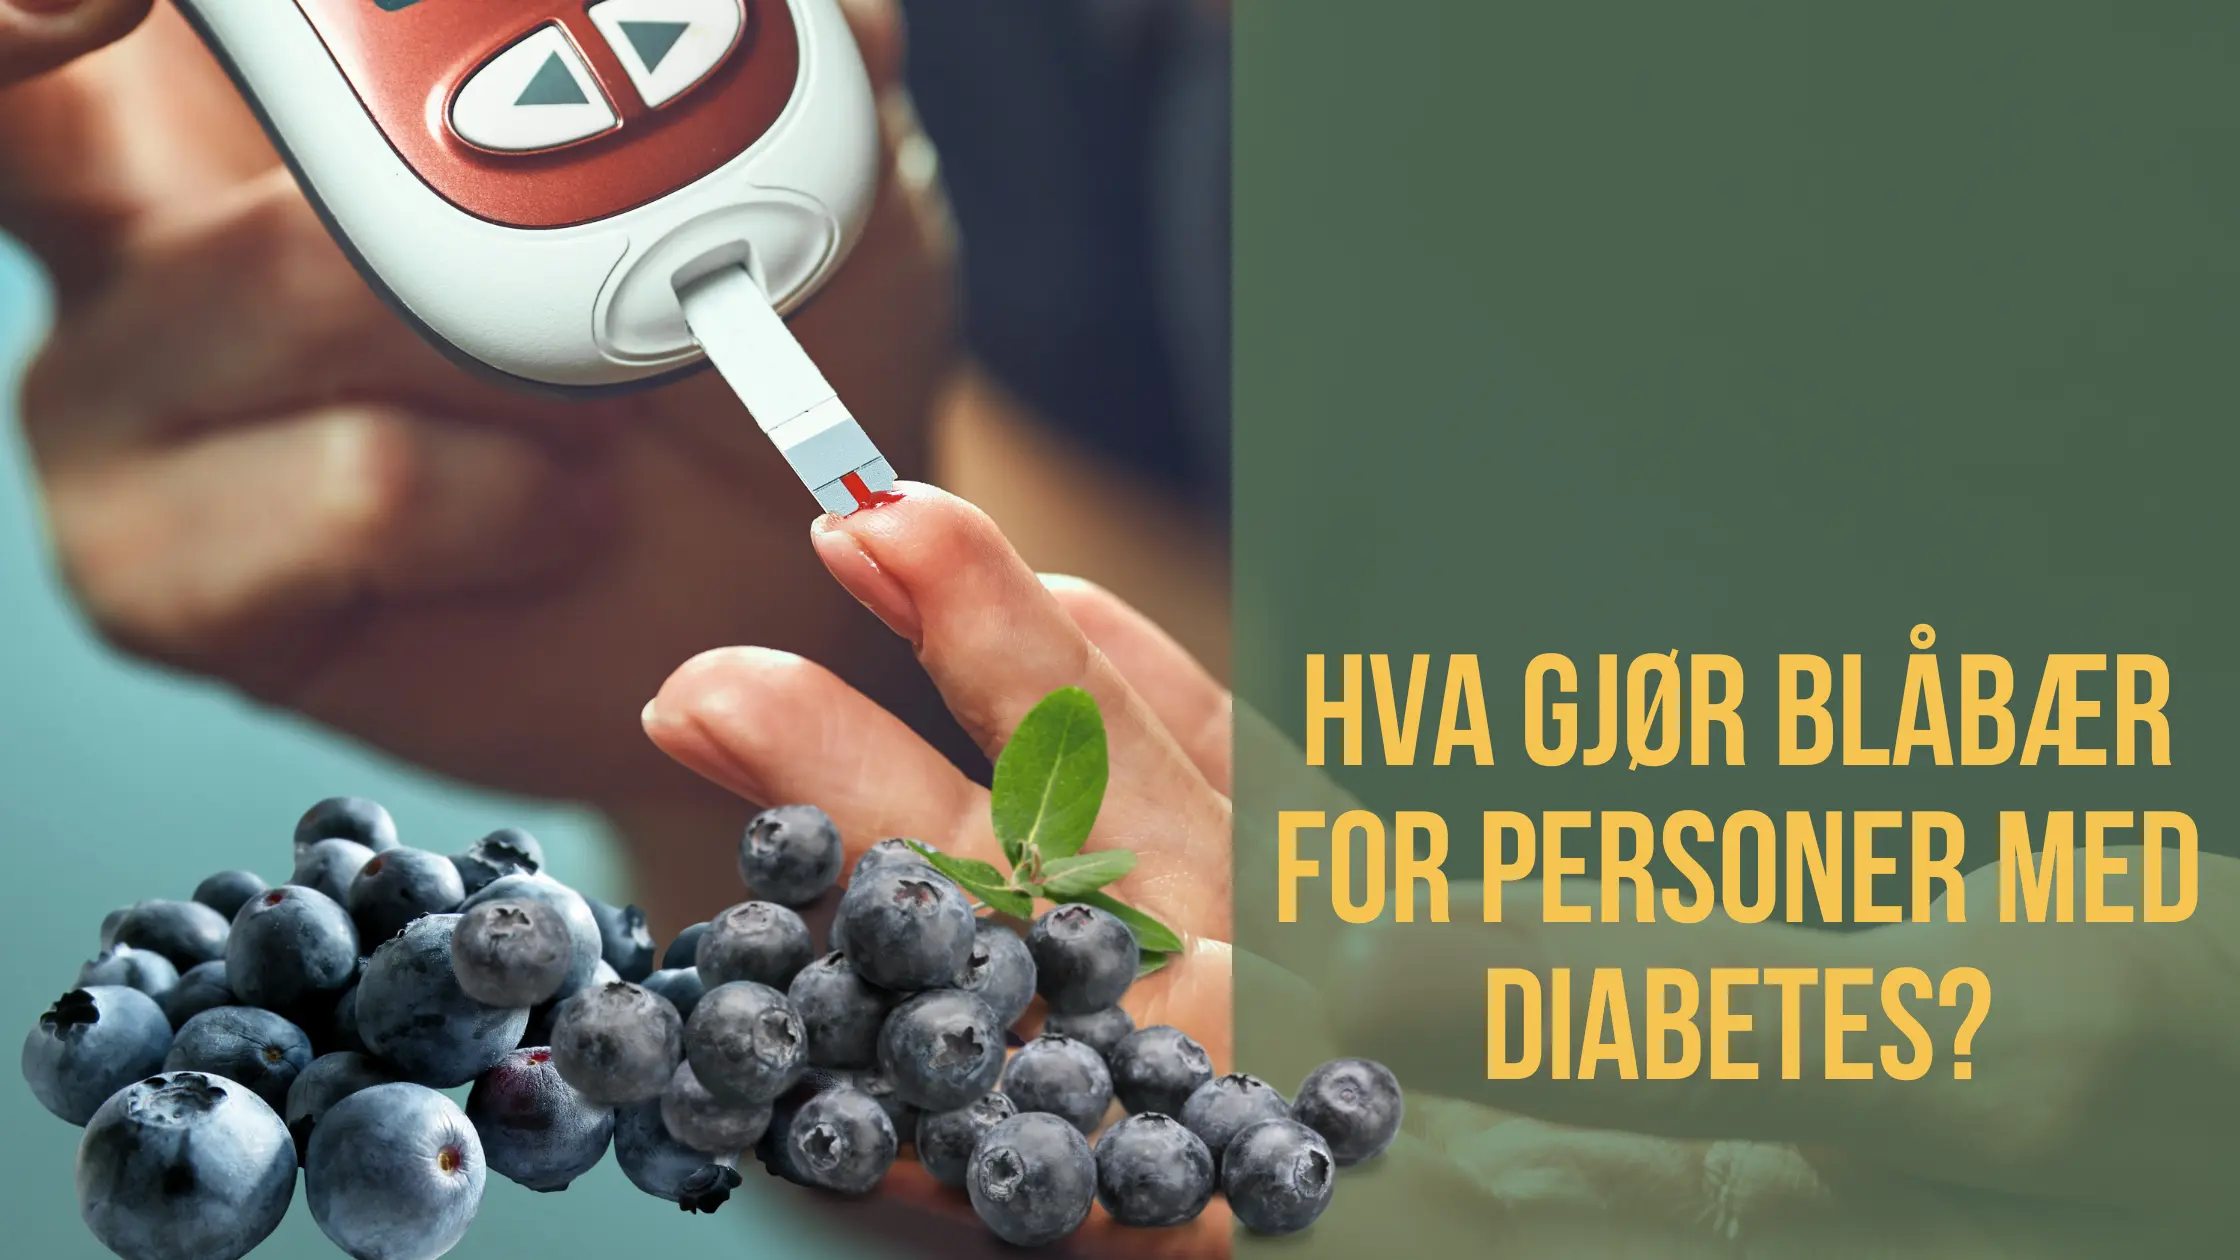 Hva gjør blåbær for personer med diabetes